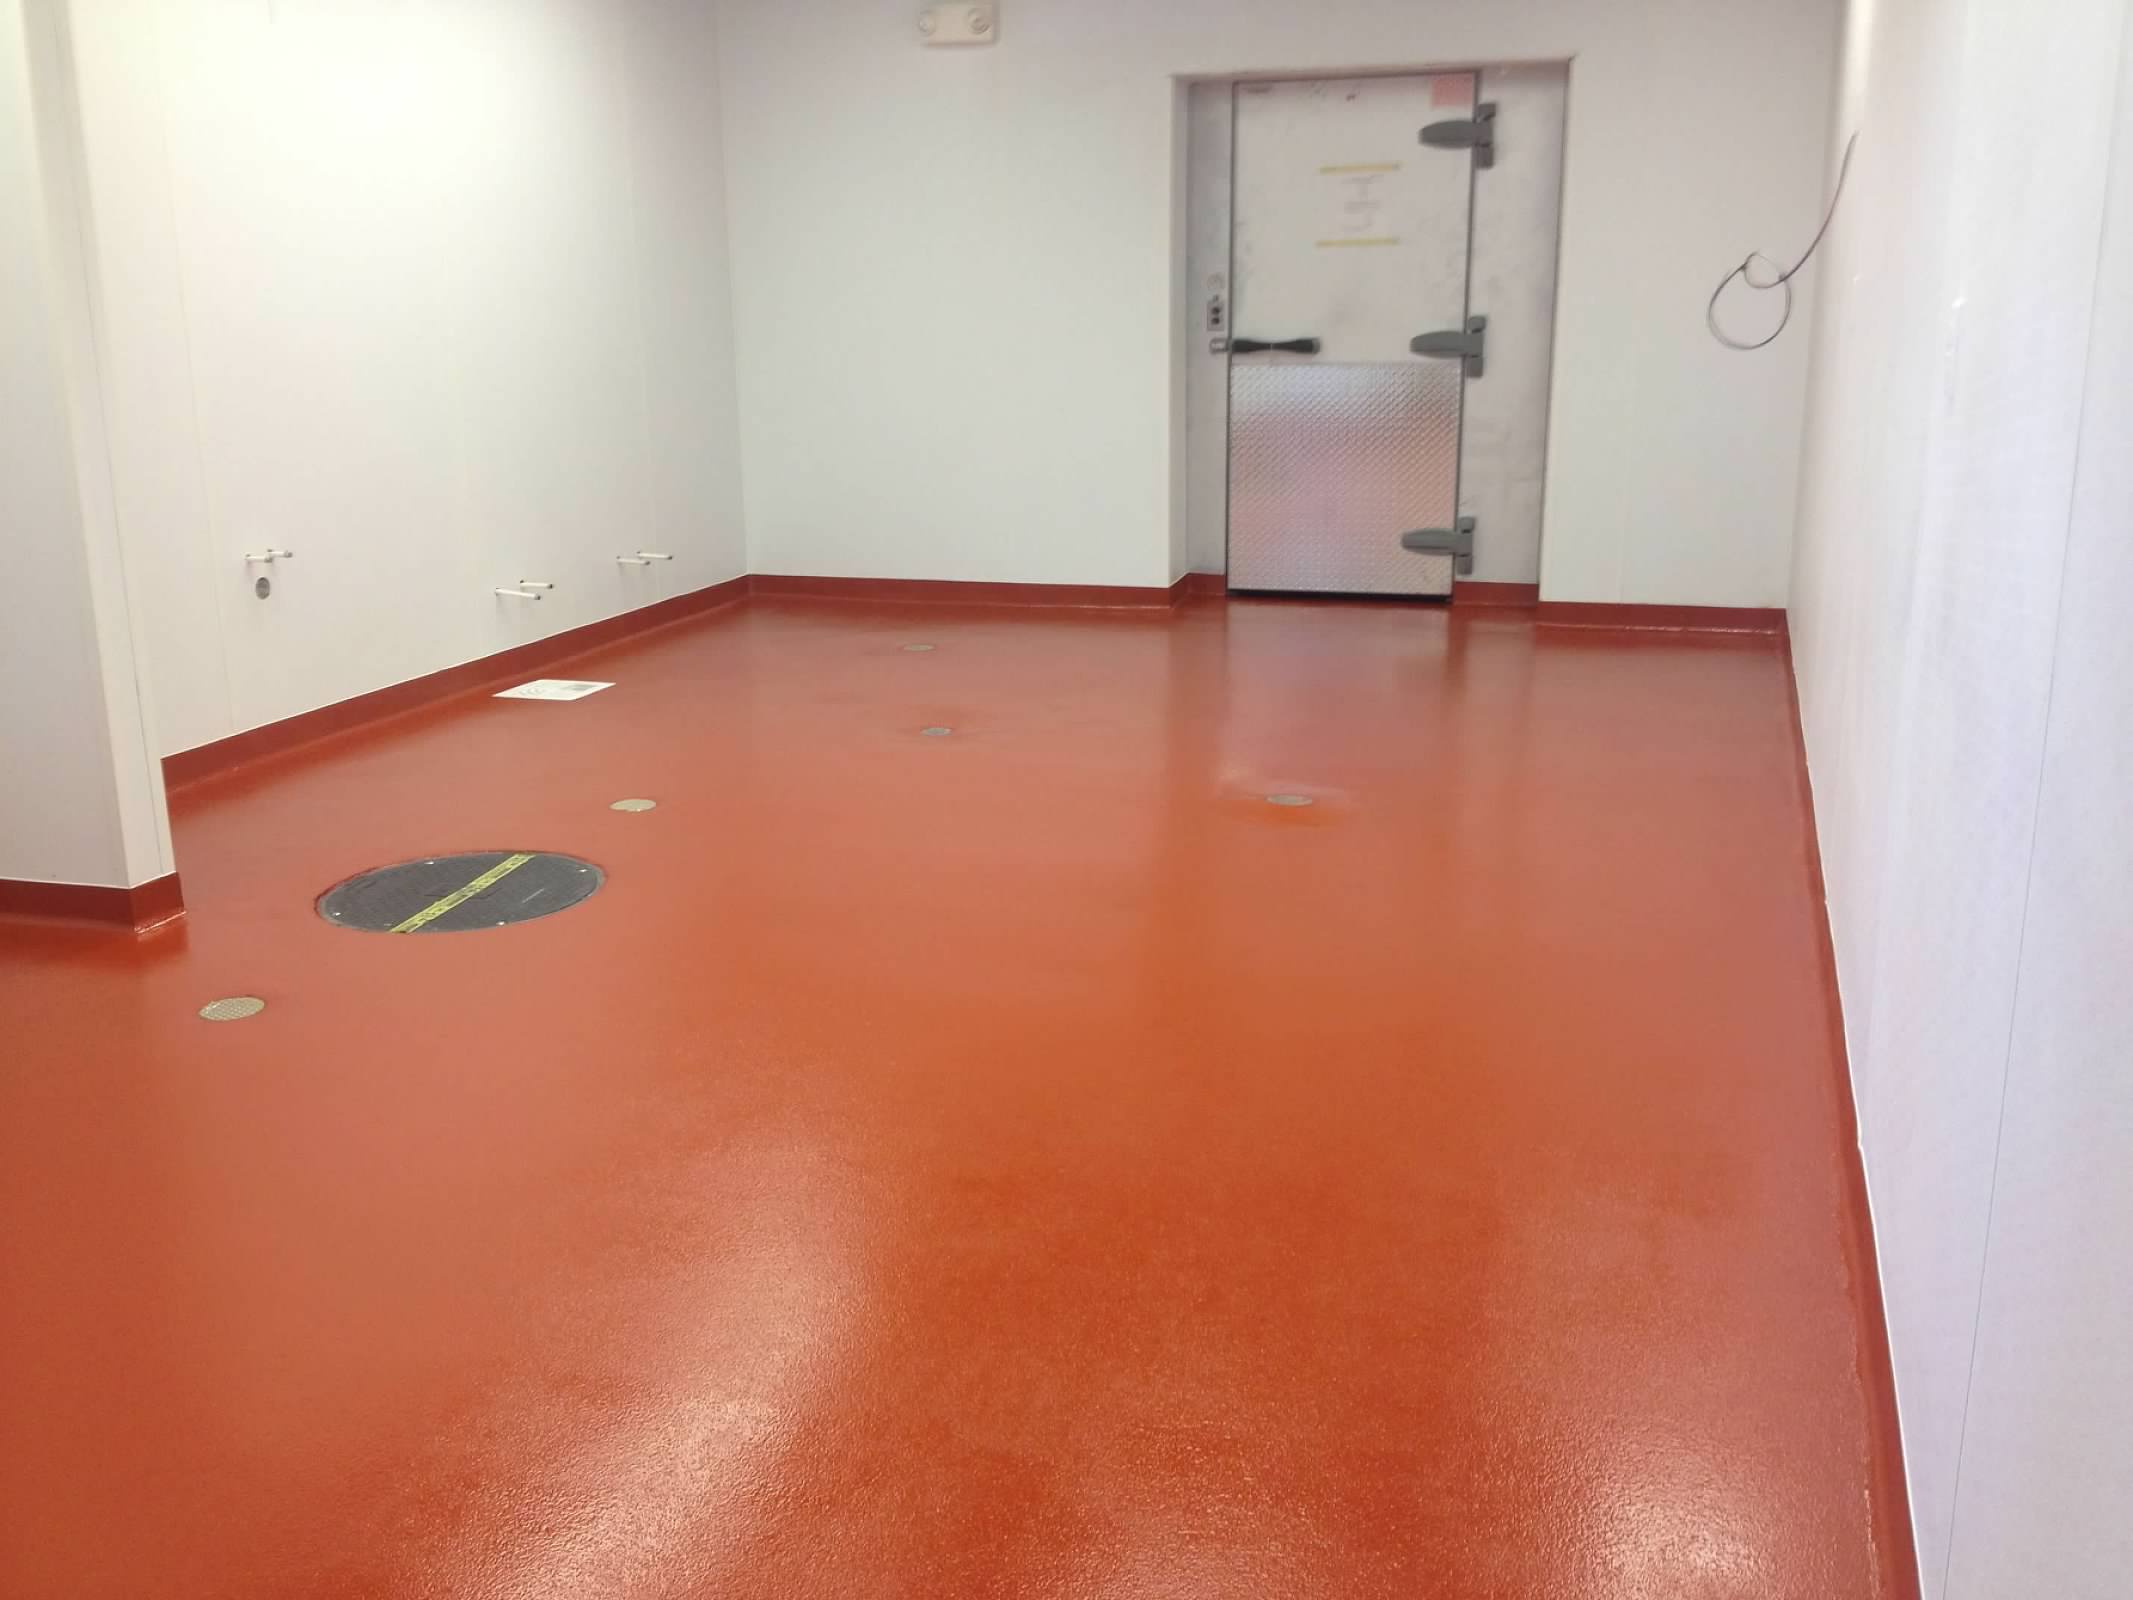 Coated red floor with a large freezer door